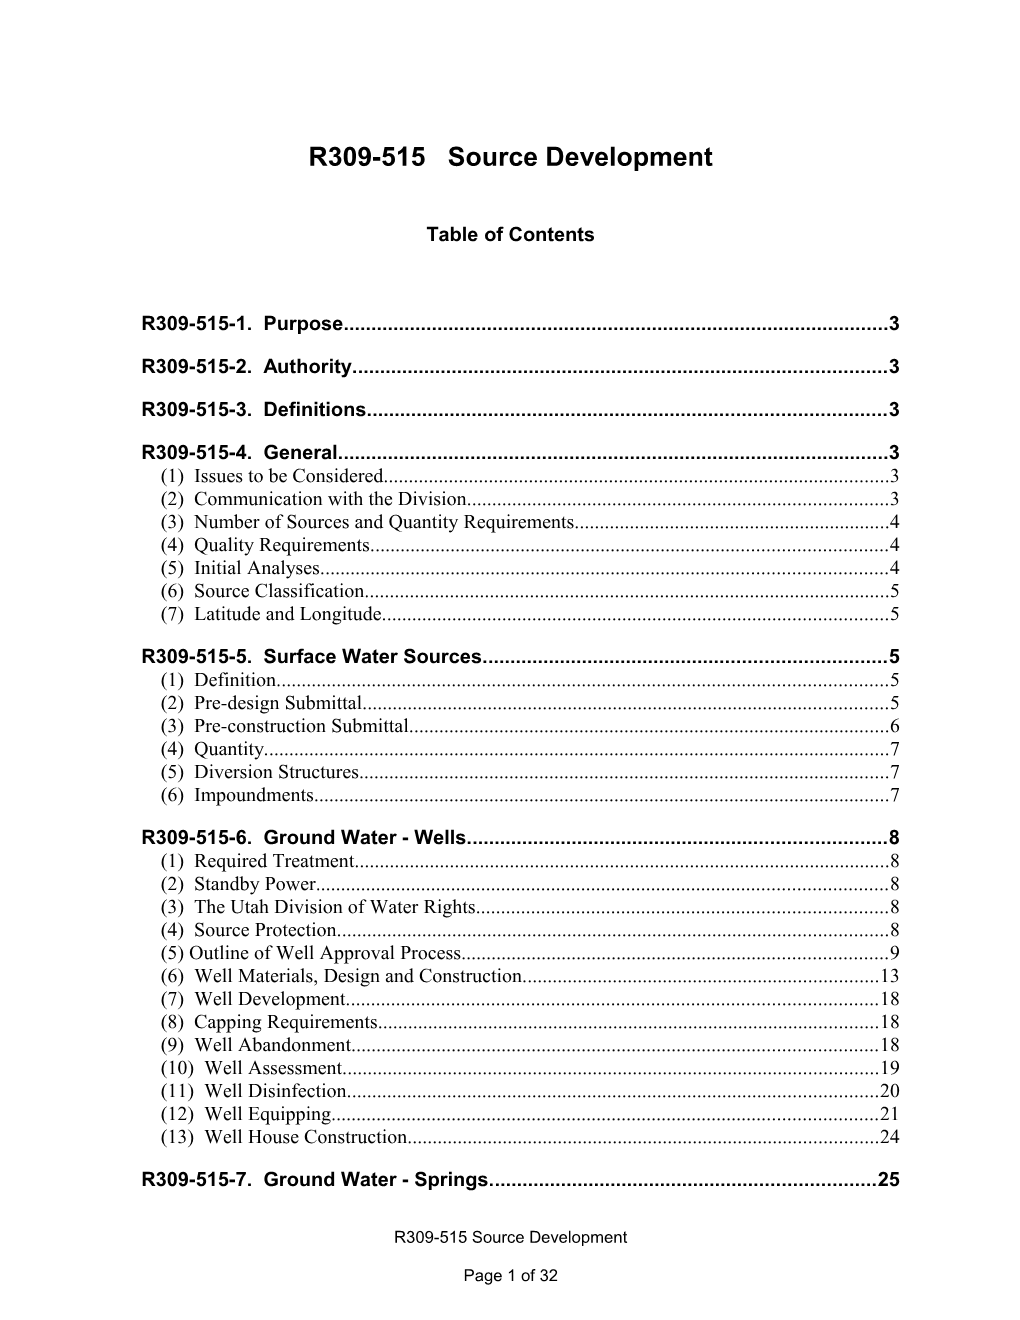 R309-515 Source Development (Effective April 21, 2004